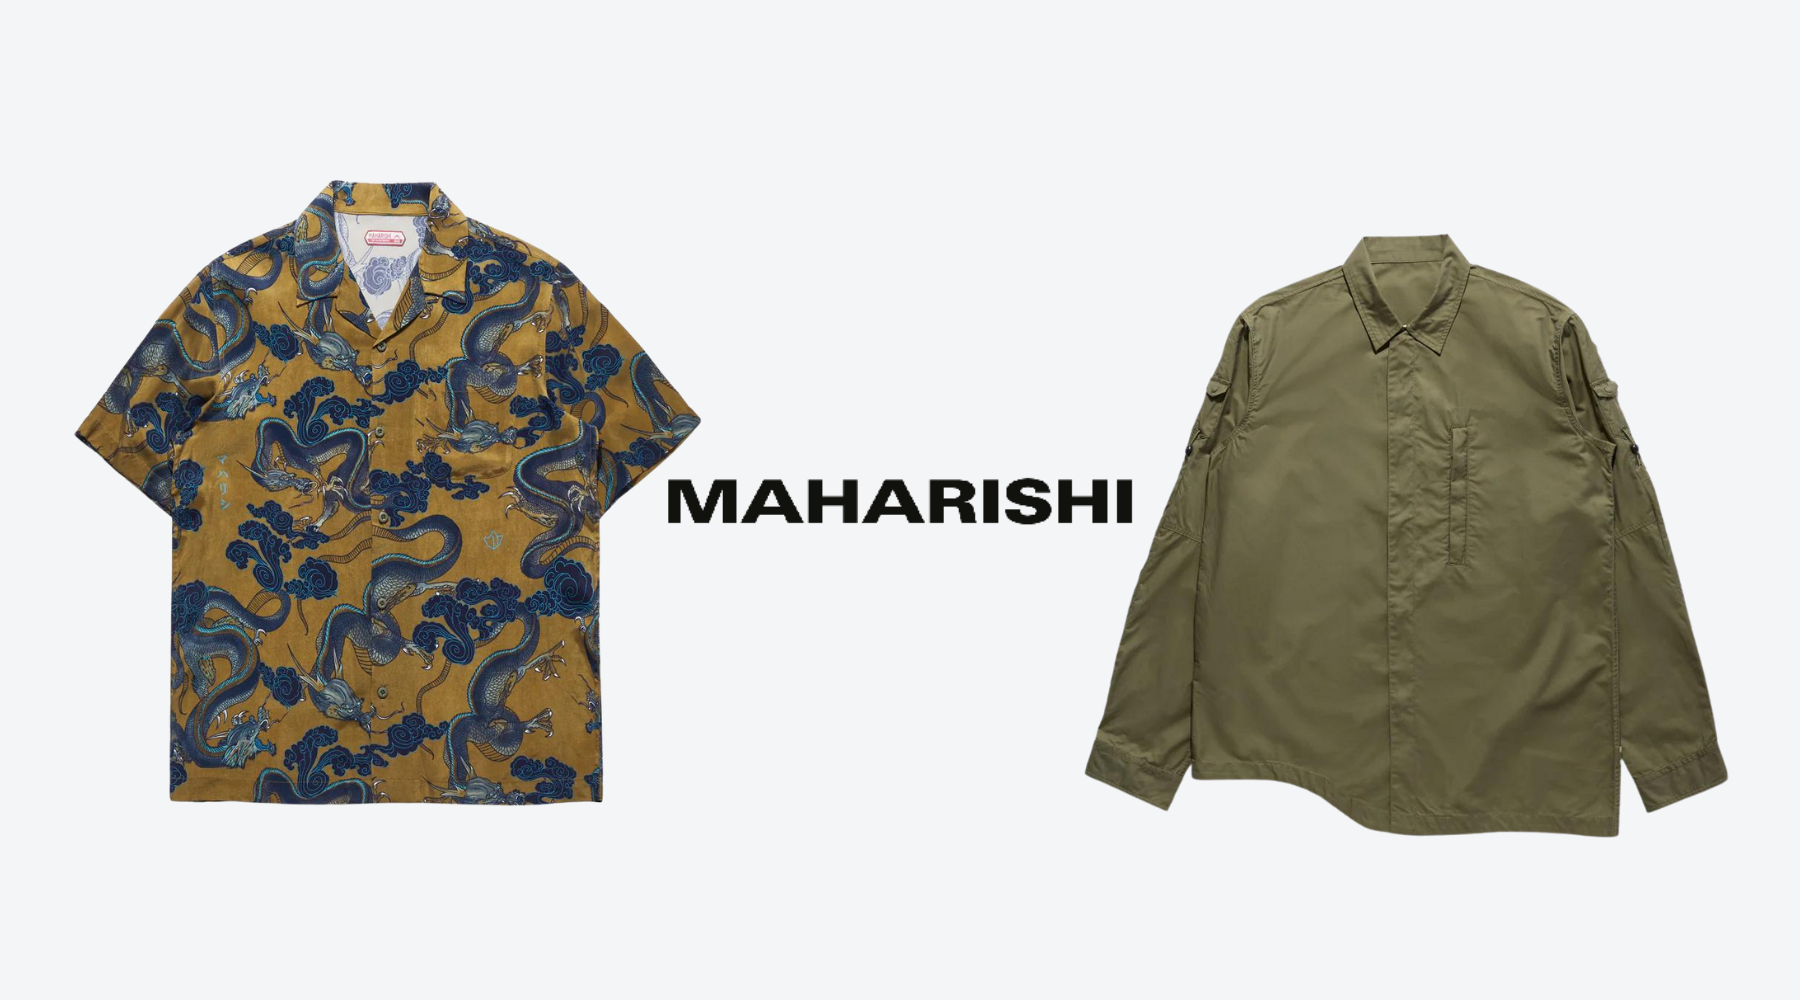 MAHARISHI SHIRTS: FUSION AESTHETICS – Ragazzi Clothing